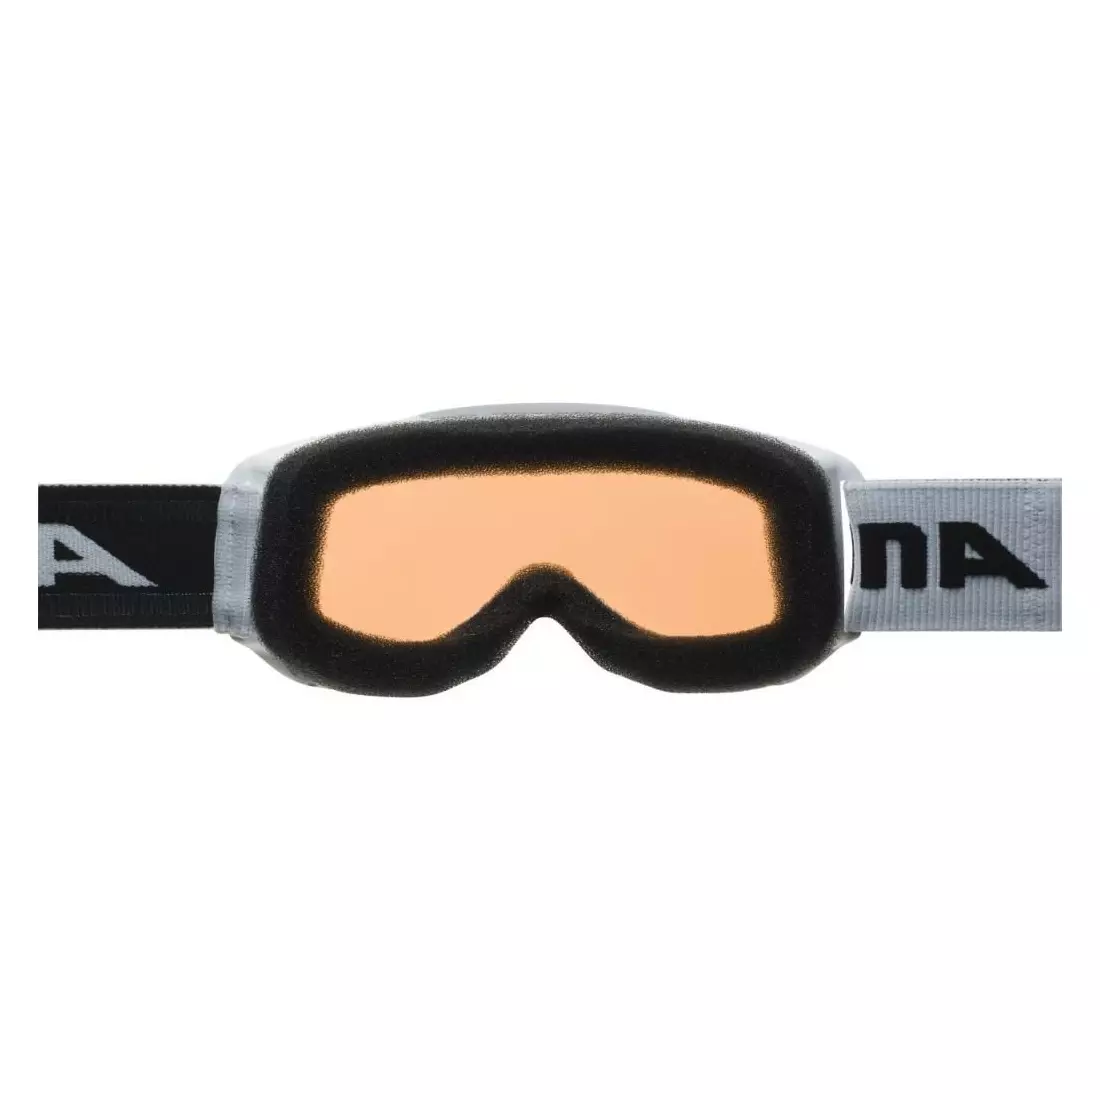 Sí / snowboard szemüveg ALPINA JUNIOR PINEY WHITE A7268411